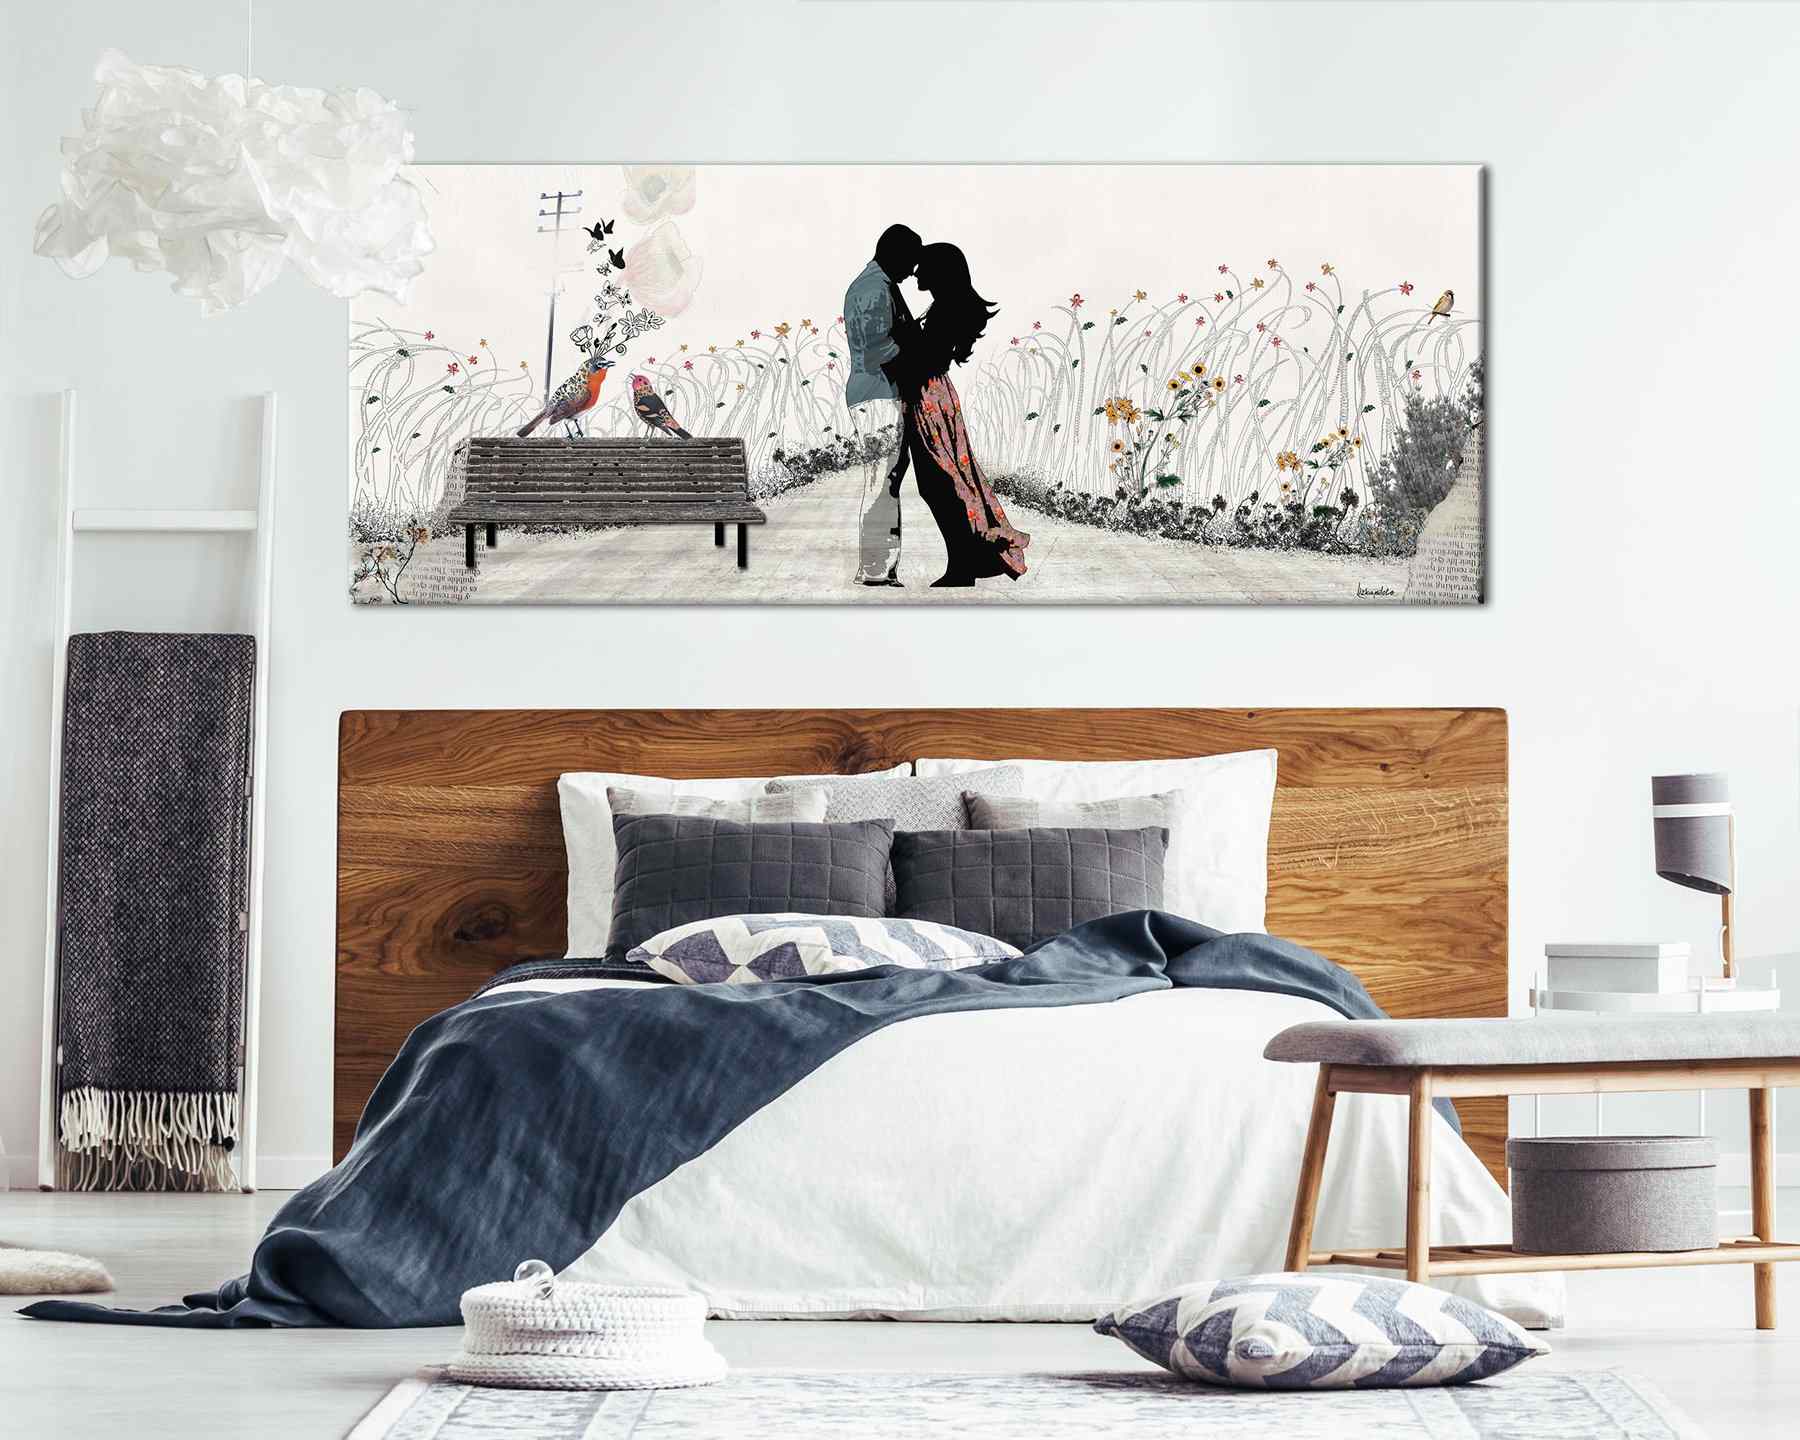     Couple Bedroom Wallpapers